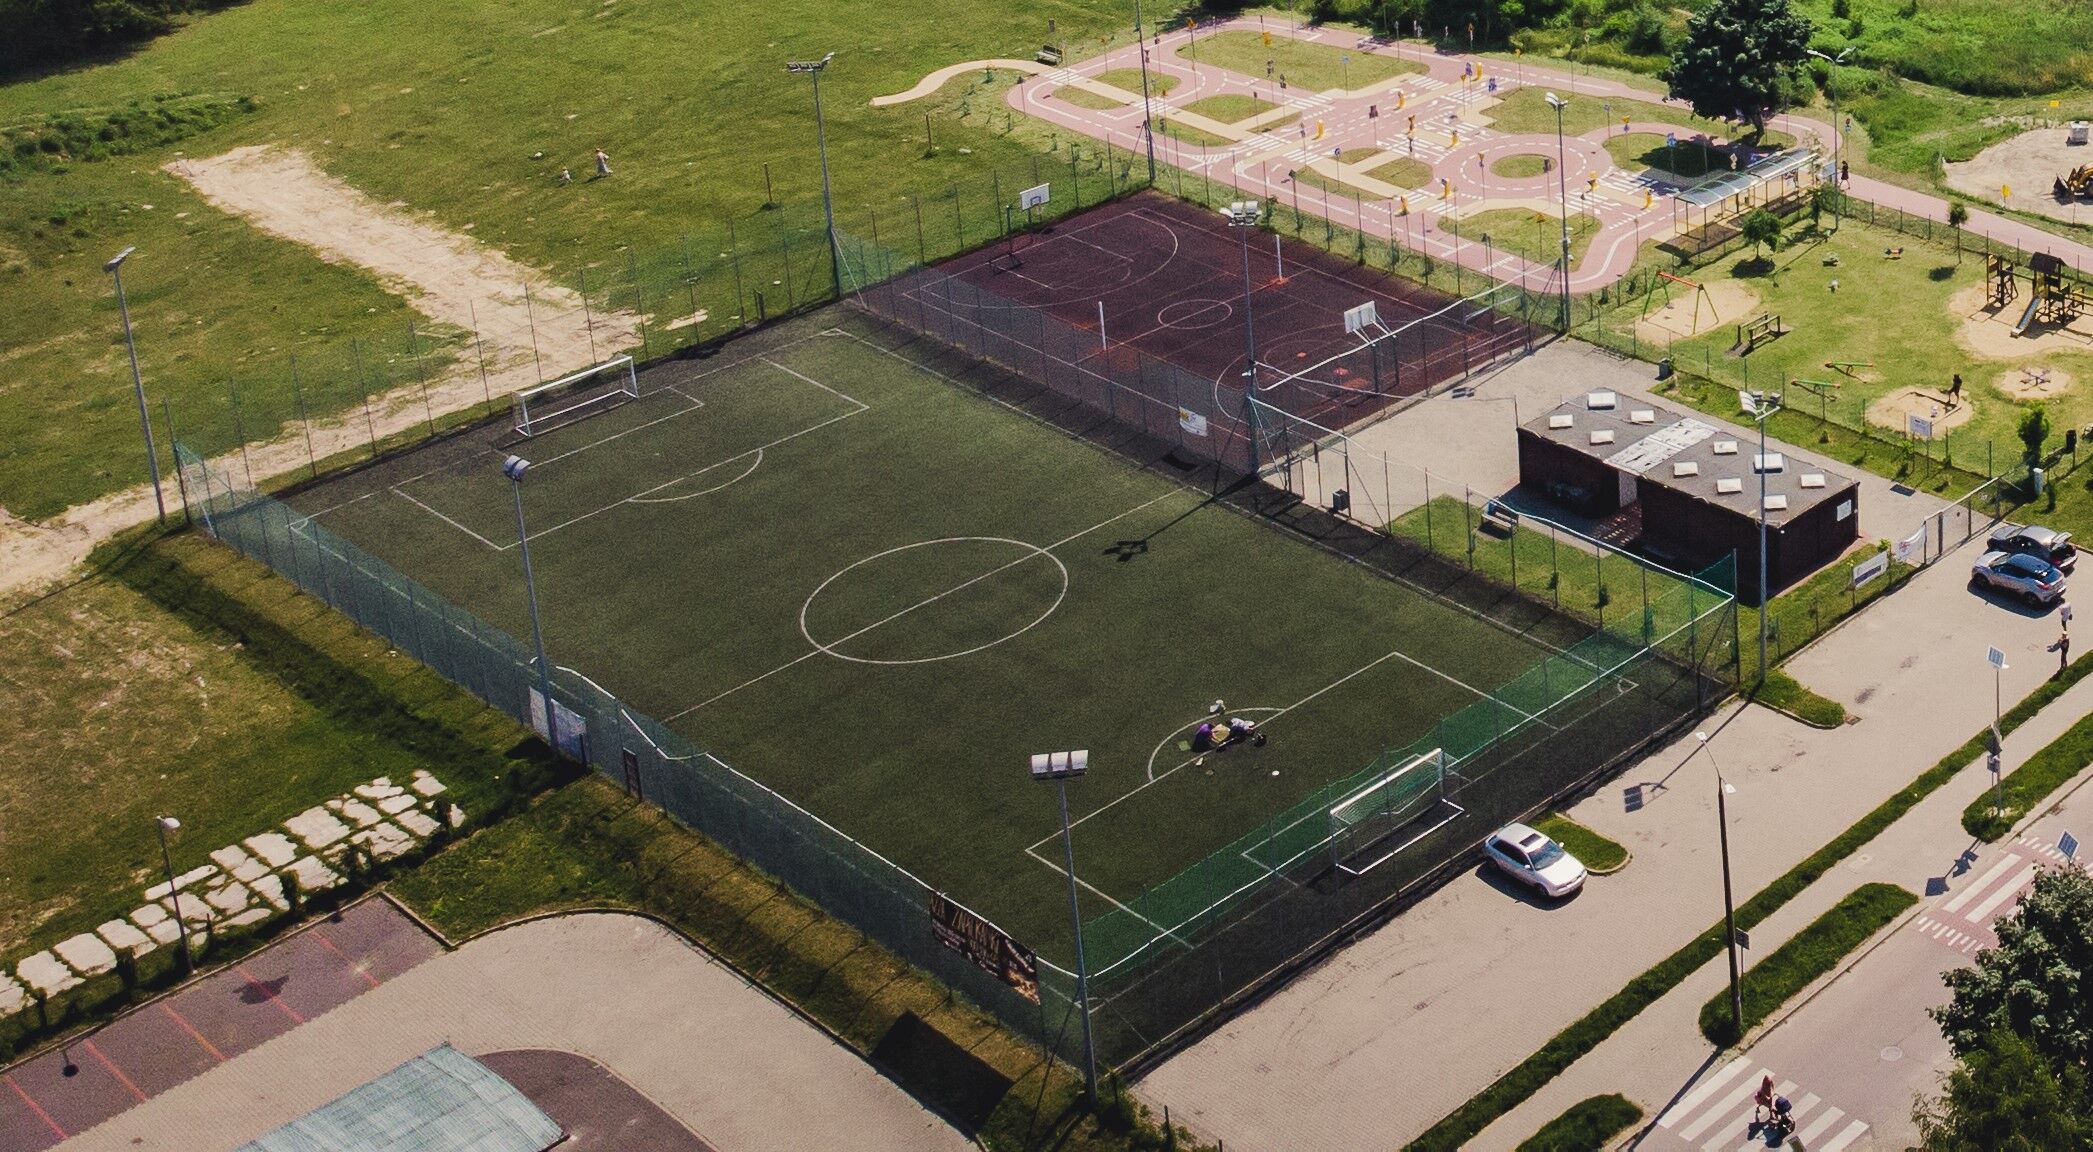 Zdjęcie lotnicze z boiskiem do piłki nożnej z sztuczną nawierzchnią, boiskami do koszykówki, placem zabaw oraz parkiem i parkingiem.